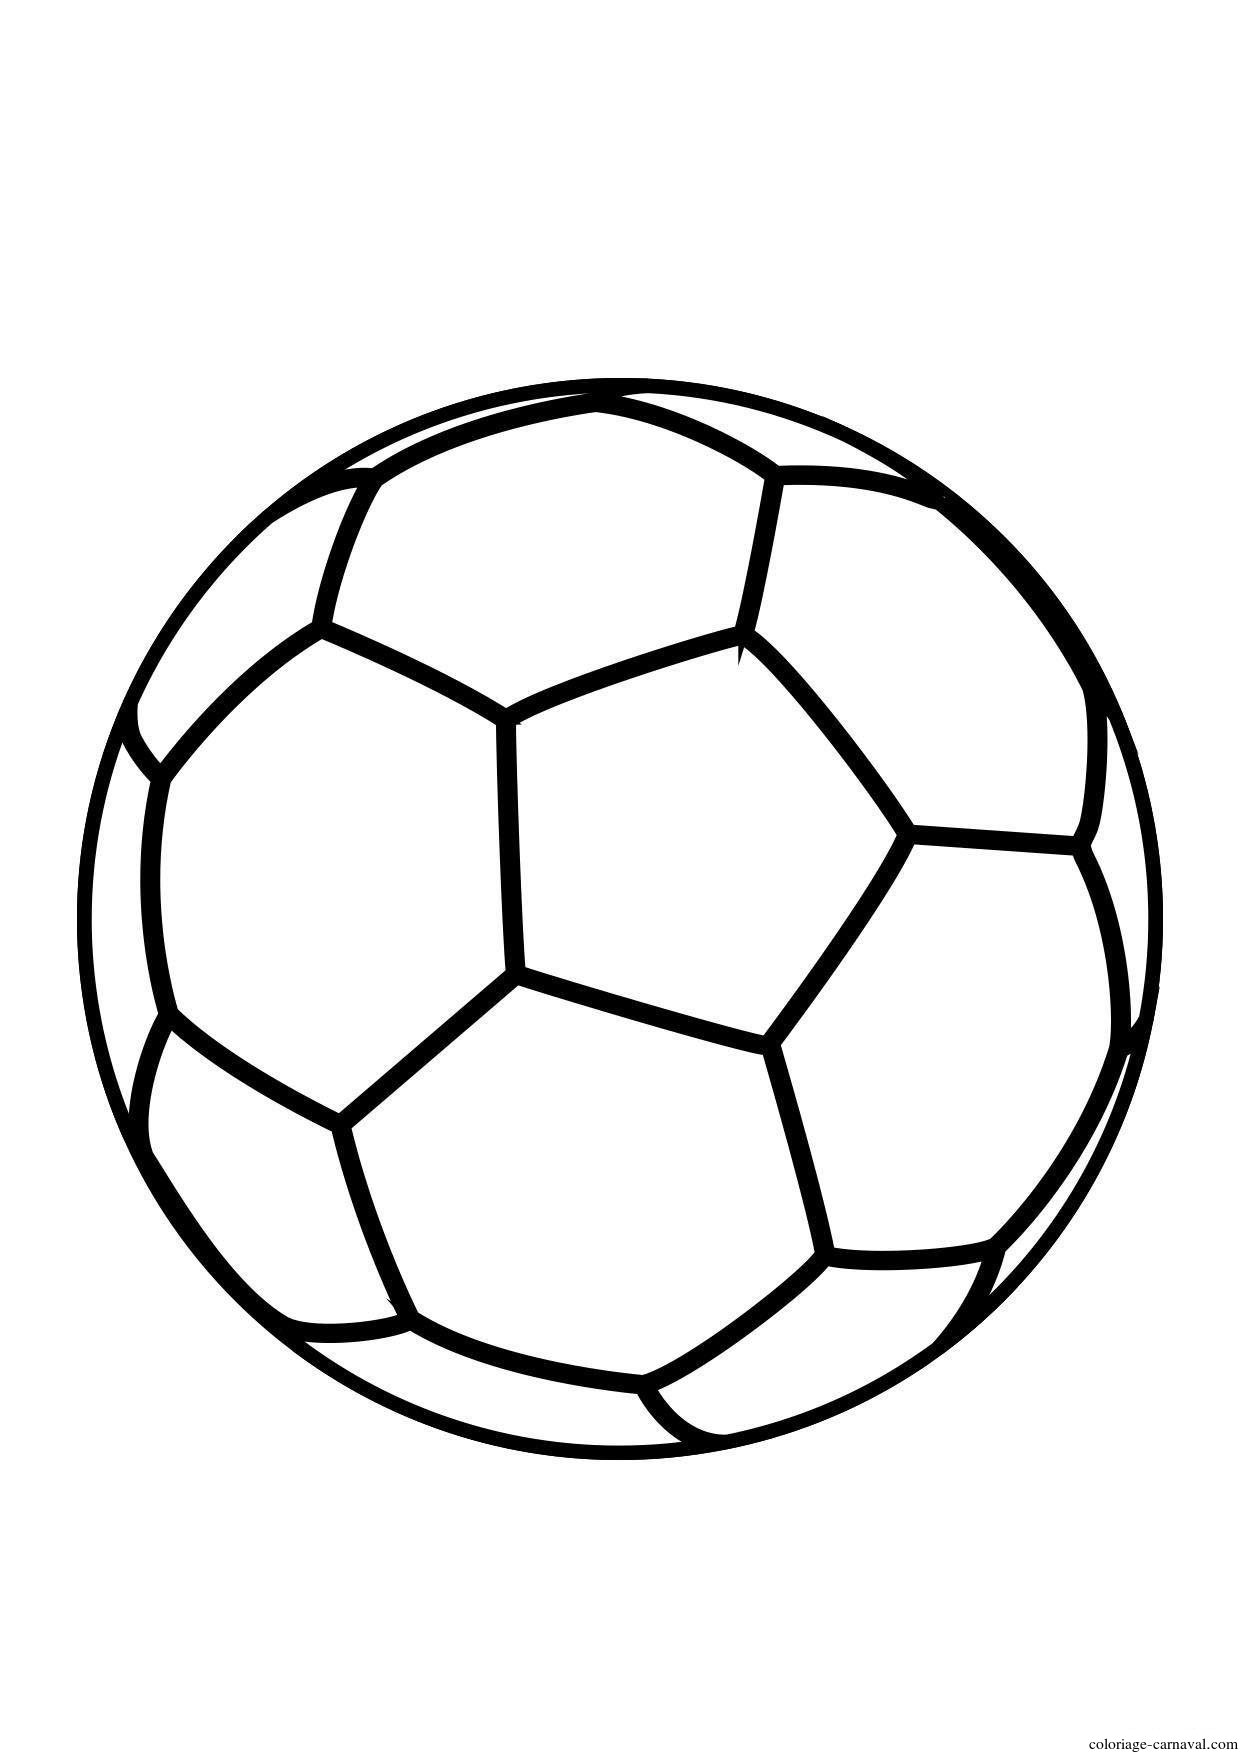 Мячик картинка раскраска. Футбольный мяч раскраска для детей. Мяч раскраска. Мячик футбольный раскраска. Мяч рисунок легкий.